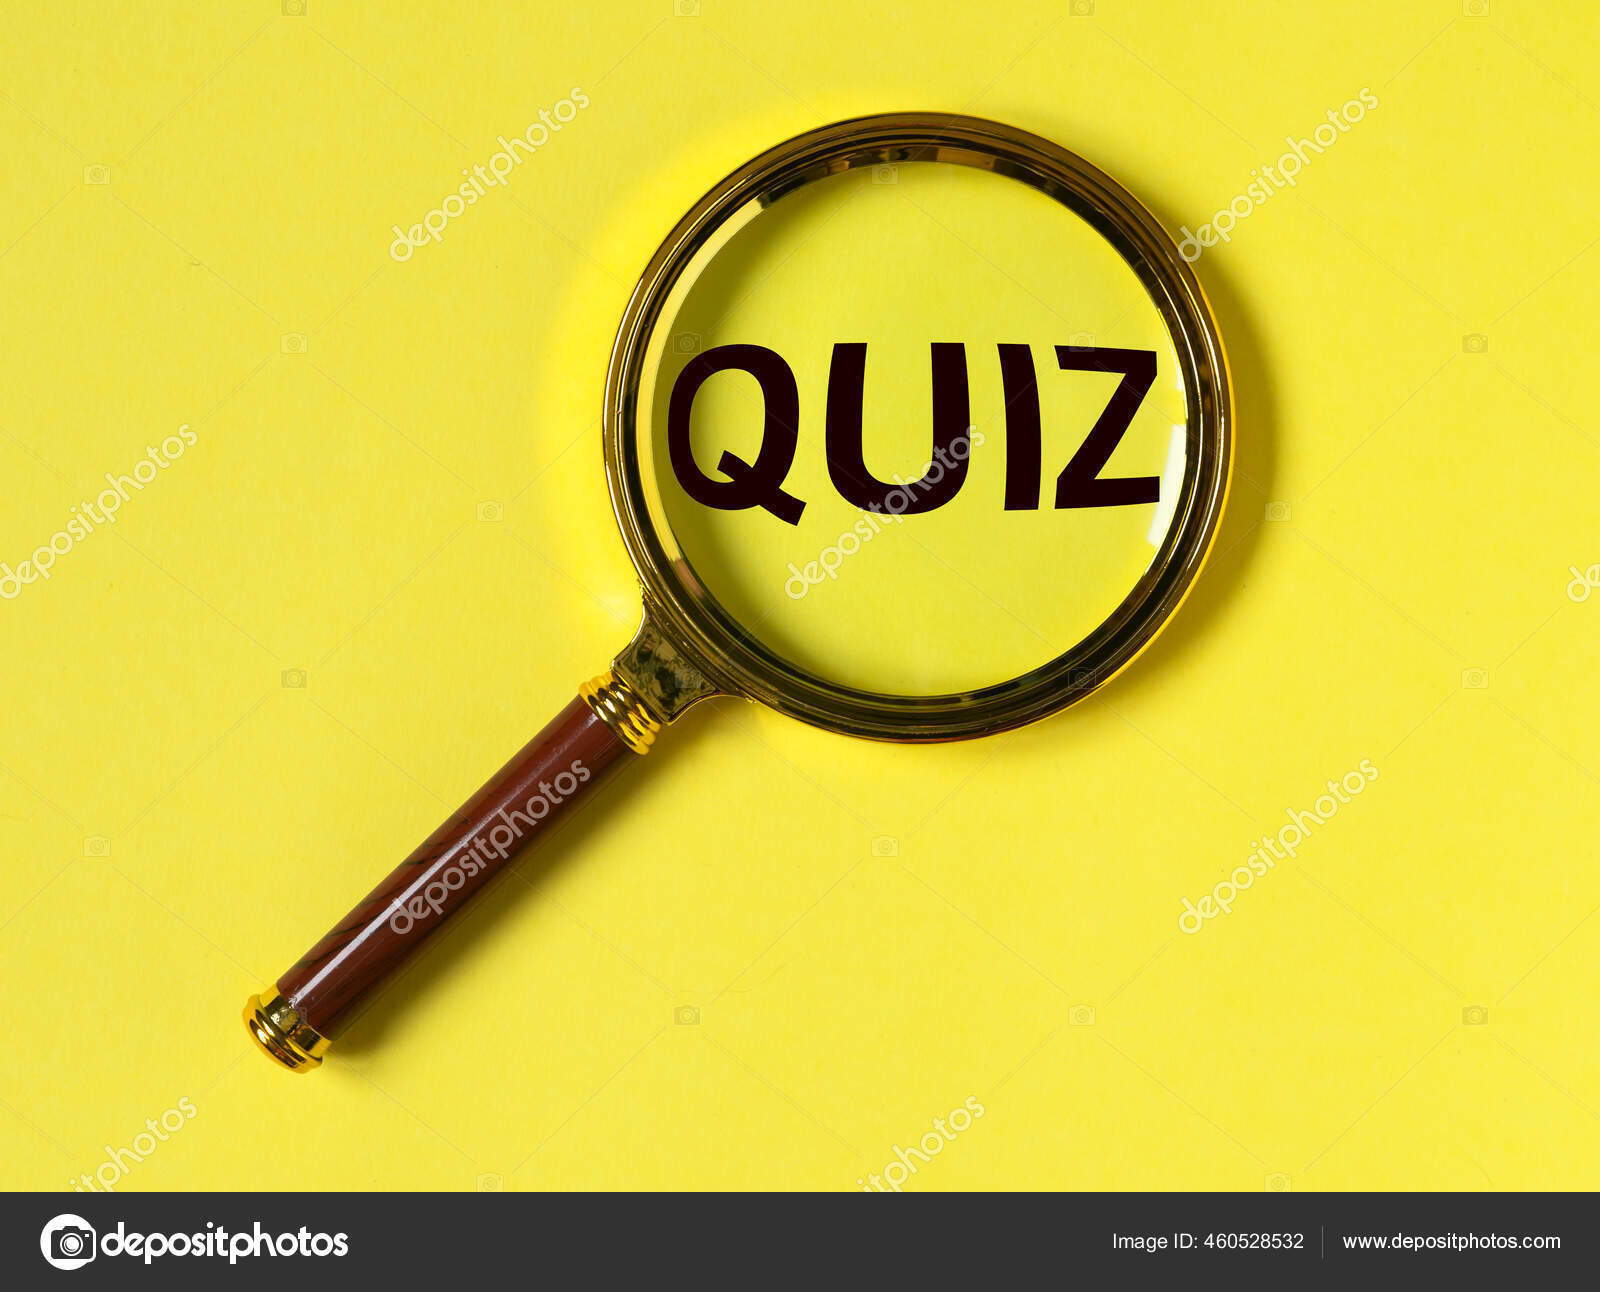 Quiz Palavra Quizz Inscrição Jogo Divertido Com Perguntas fotos, imagens de  © val.suprunovich #458999538